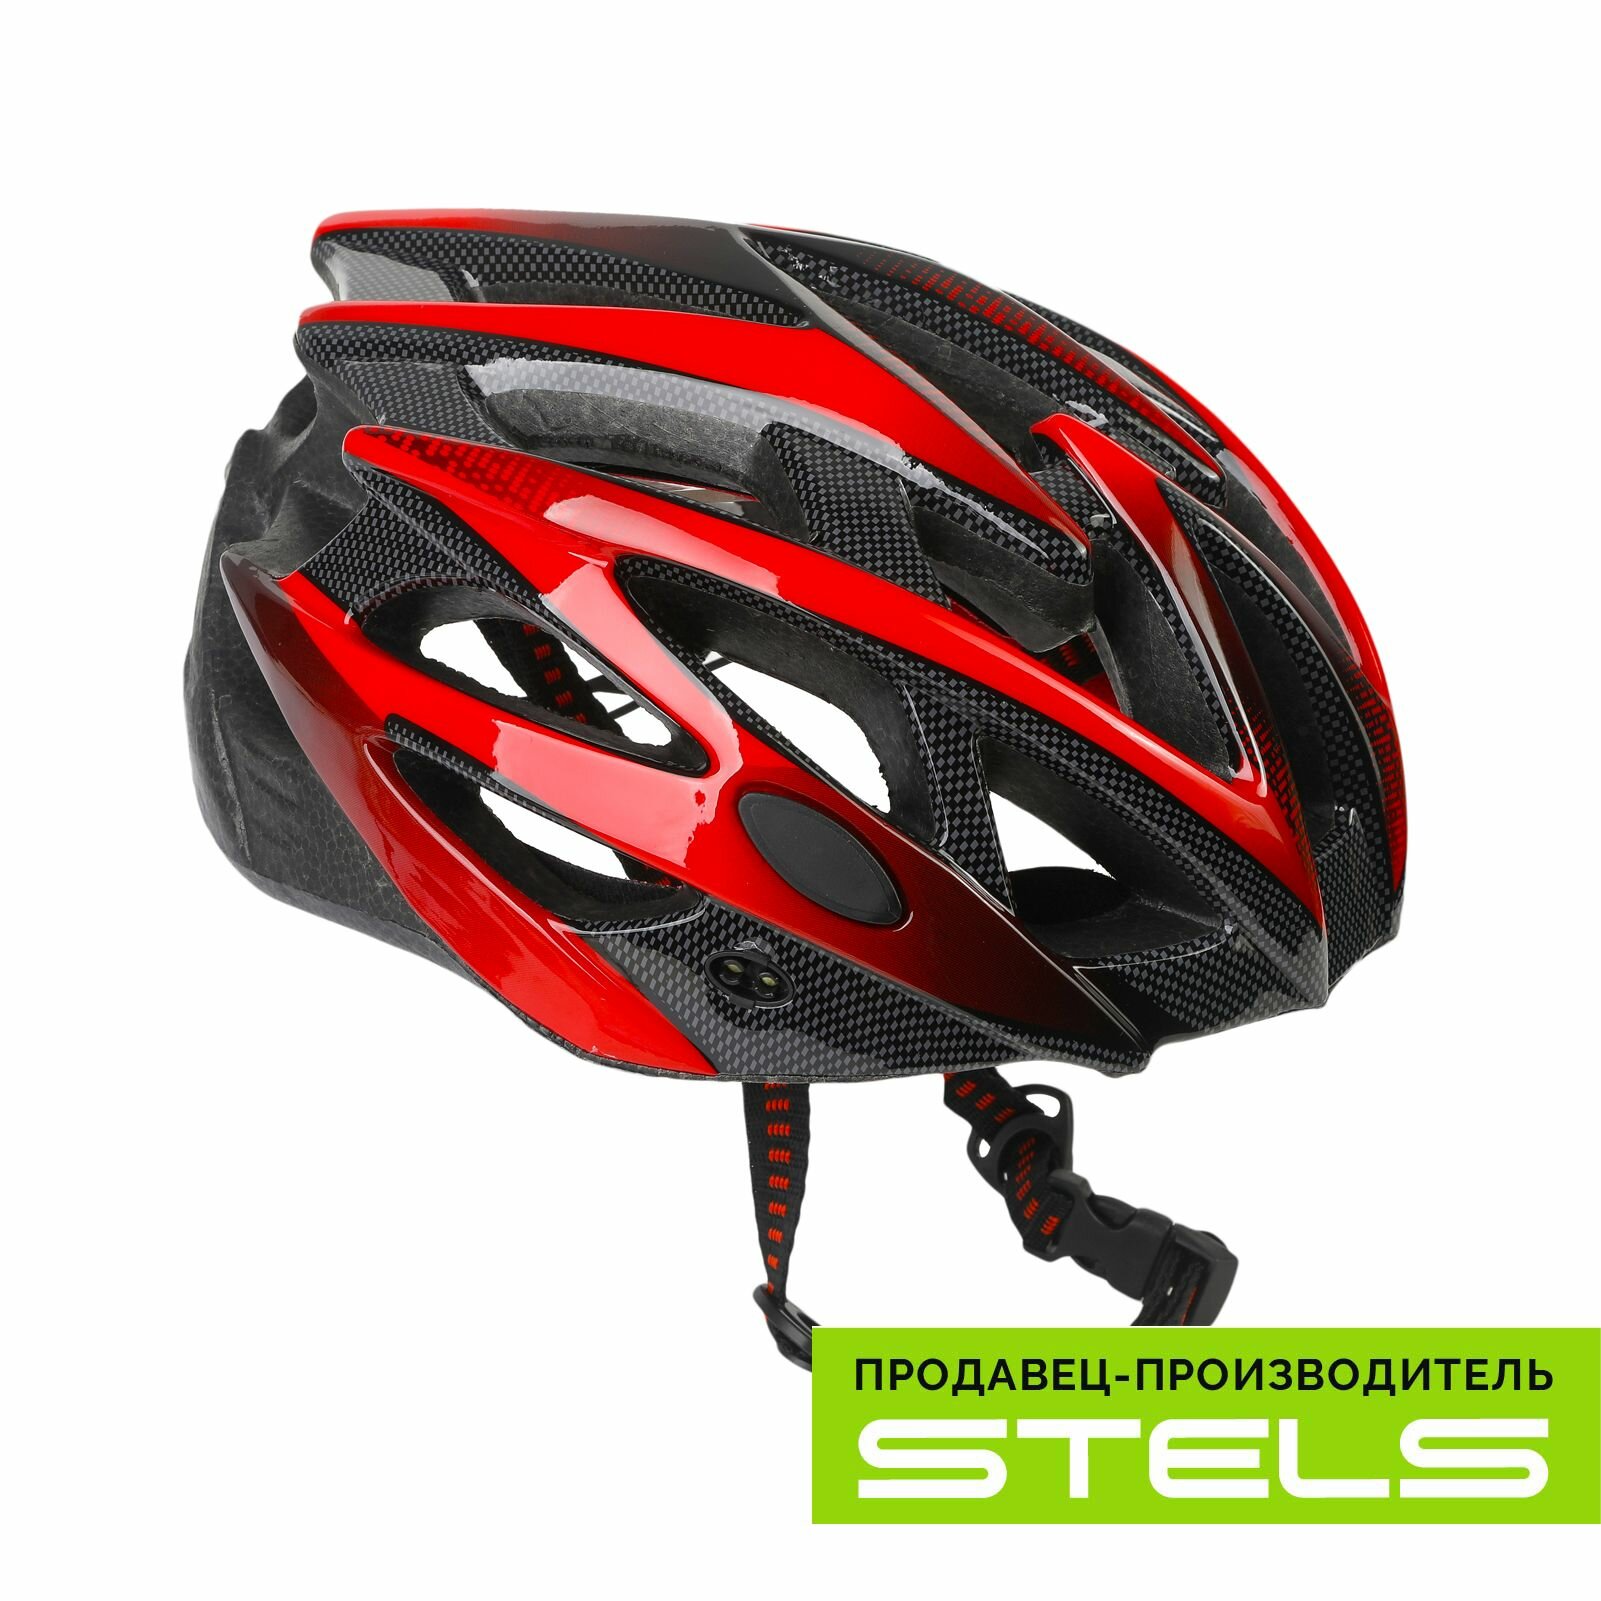 Шлем защитный для катания на велосипеде FSD-HL056 (in-mold) красно-чёрный, размер L NEW